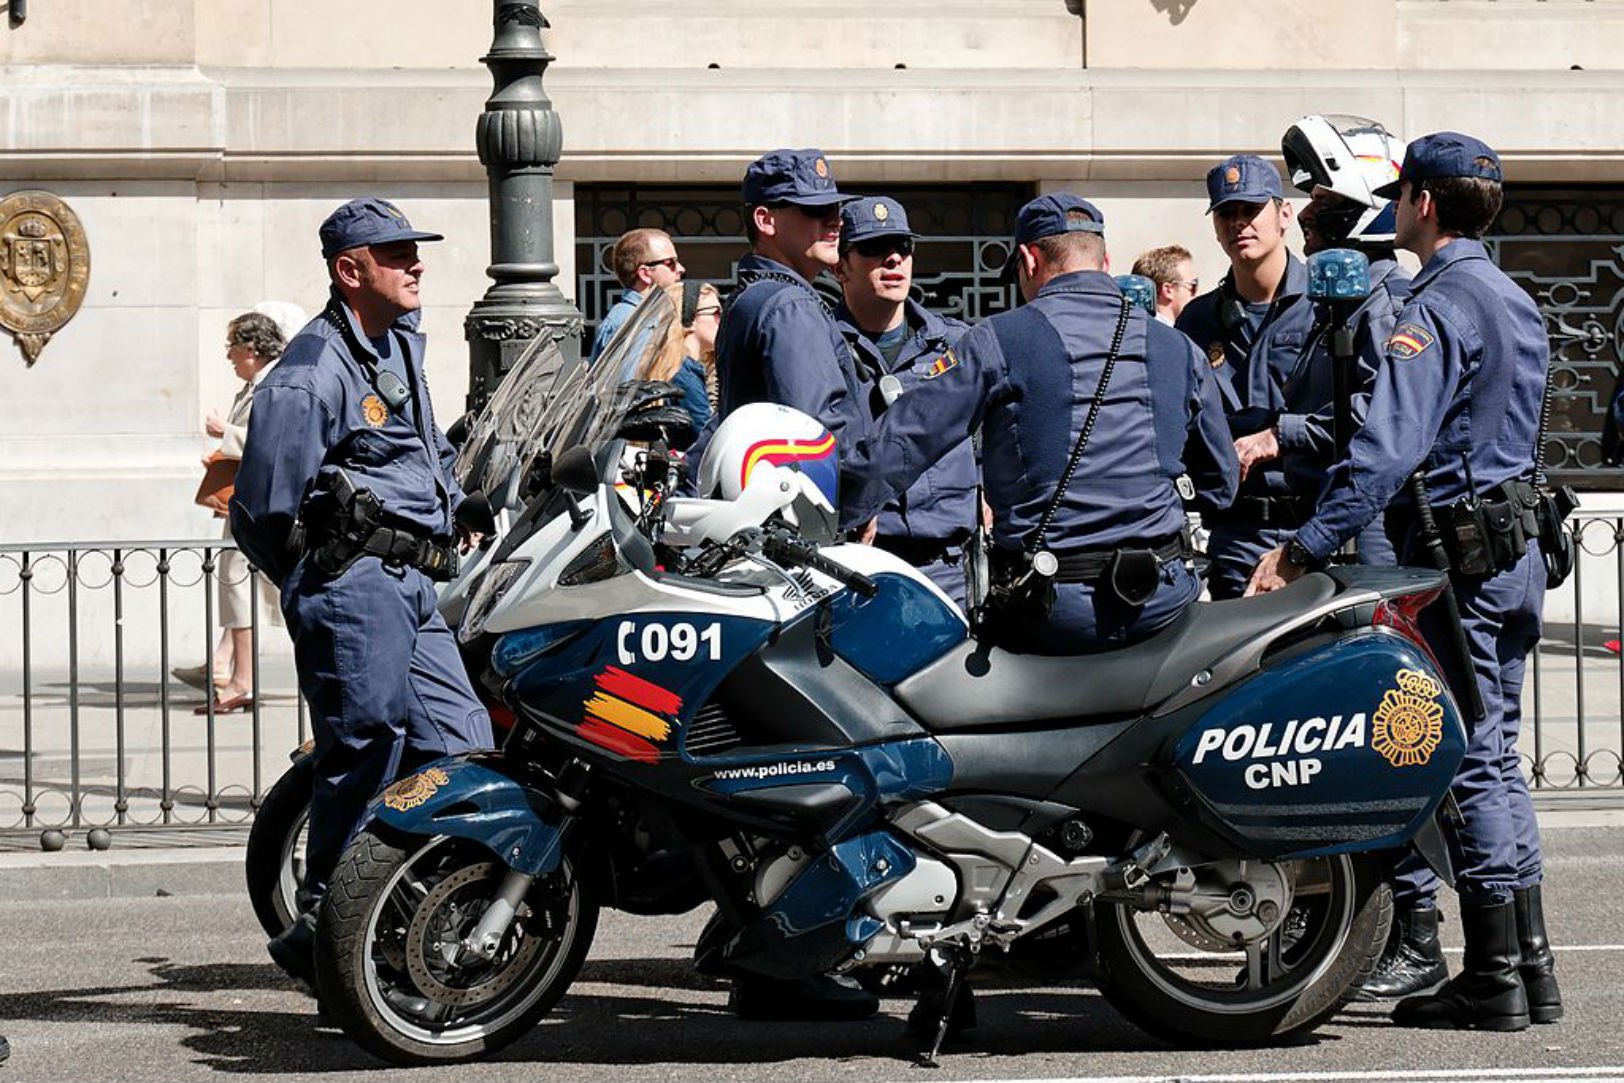 La policía española da las gracias en ocho idiomas, ¿de cuál se olvida?